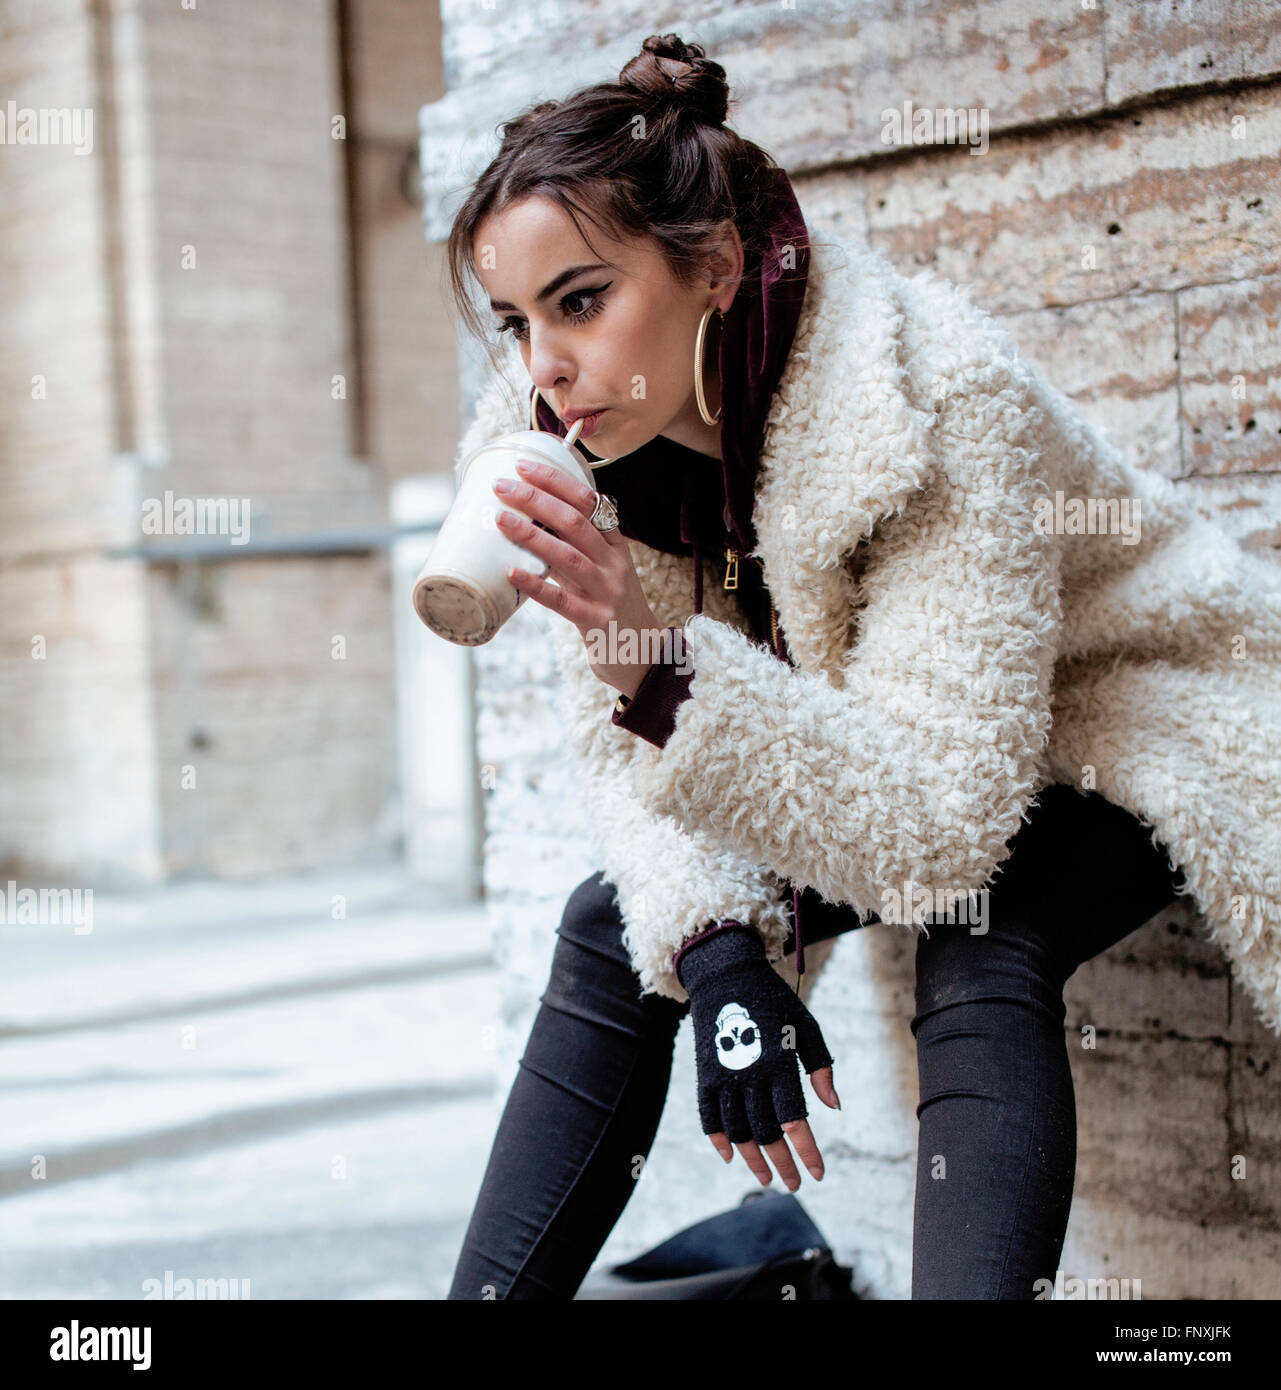 ziemlich stylish Teenagers Mädchen außerhalb auf Stadt Straße fancy Mode gekleidet trinken Milch-shake Stockfoto